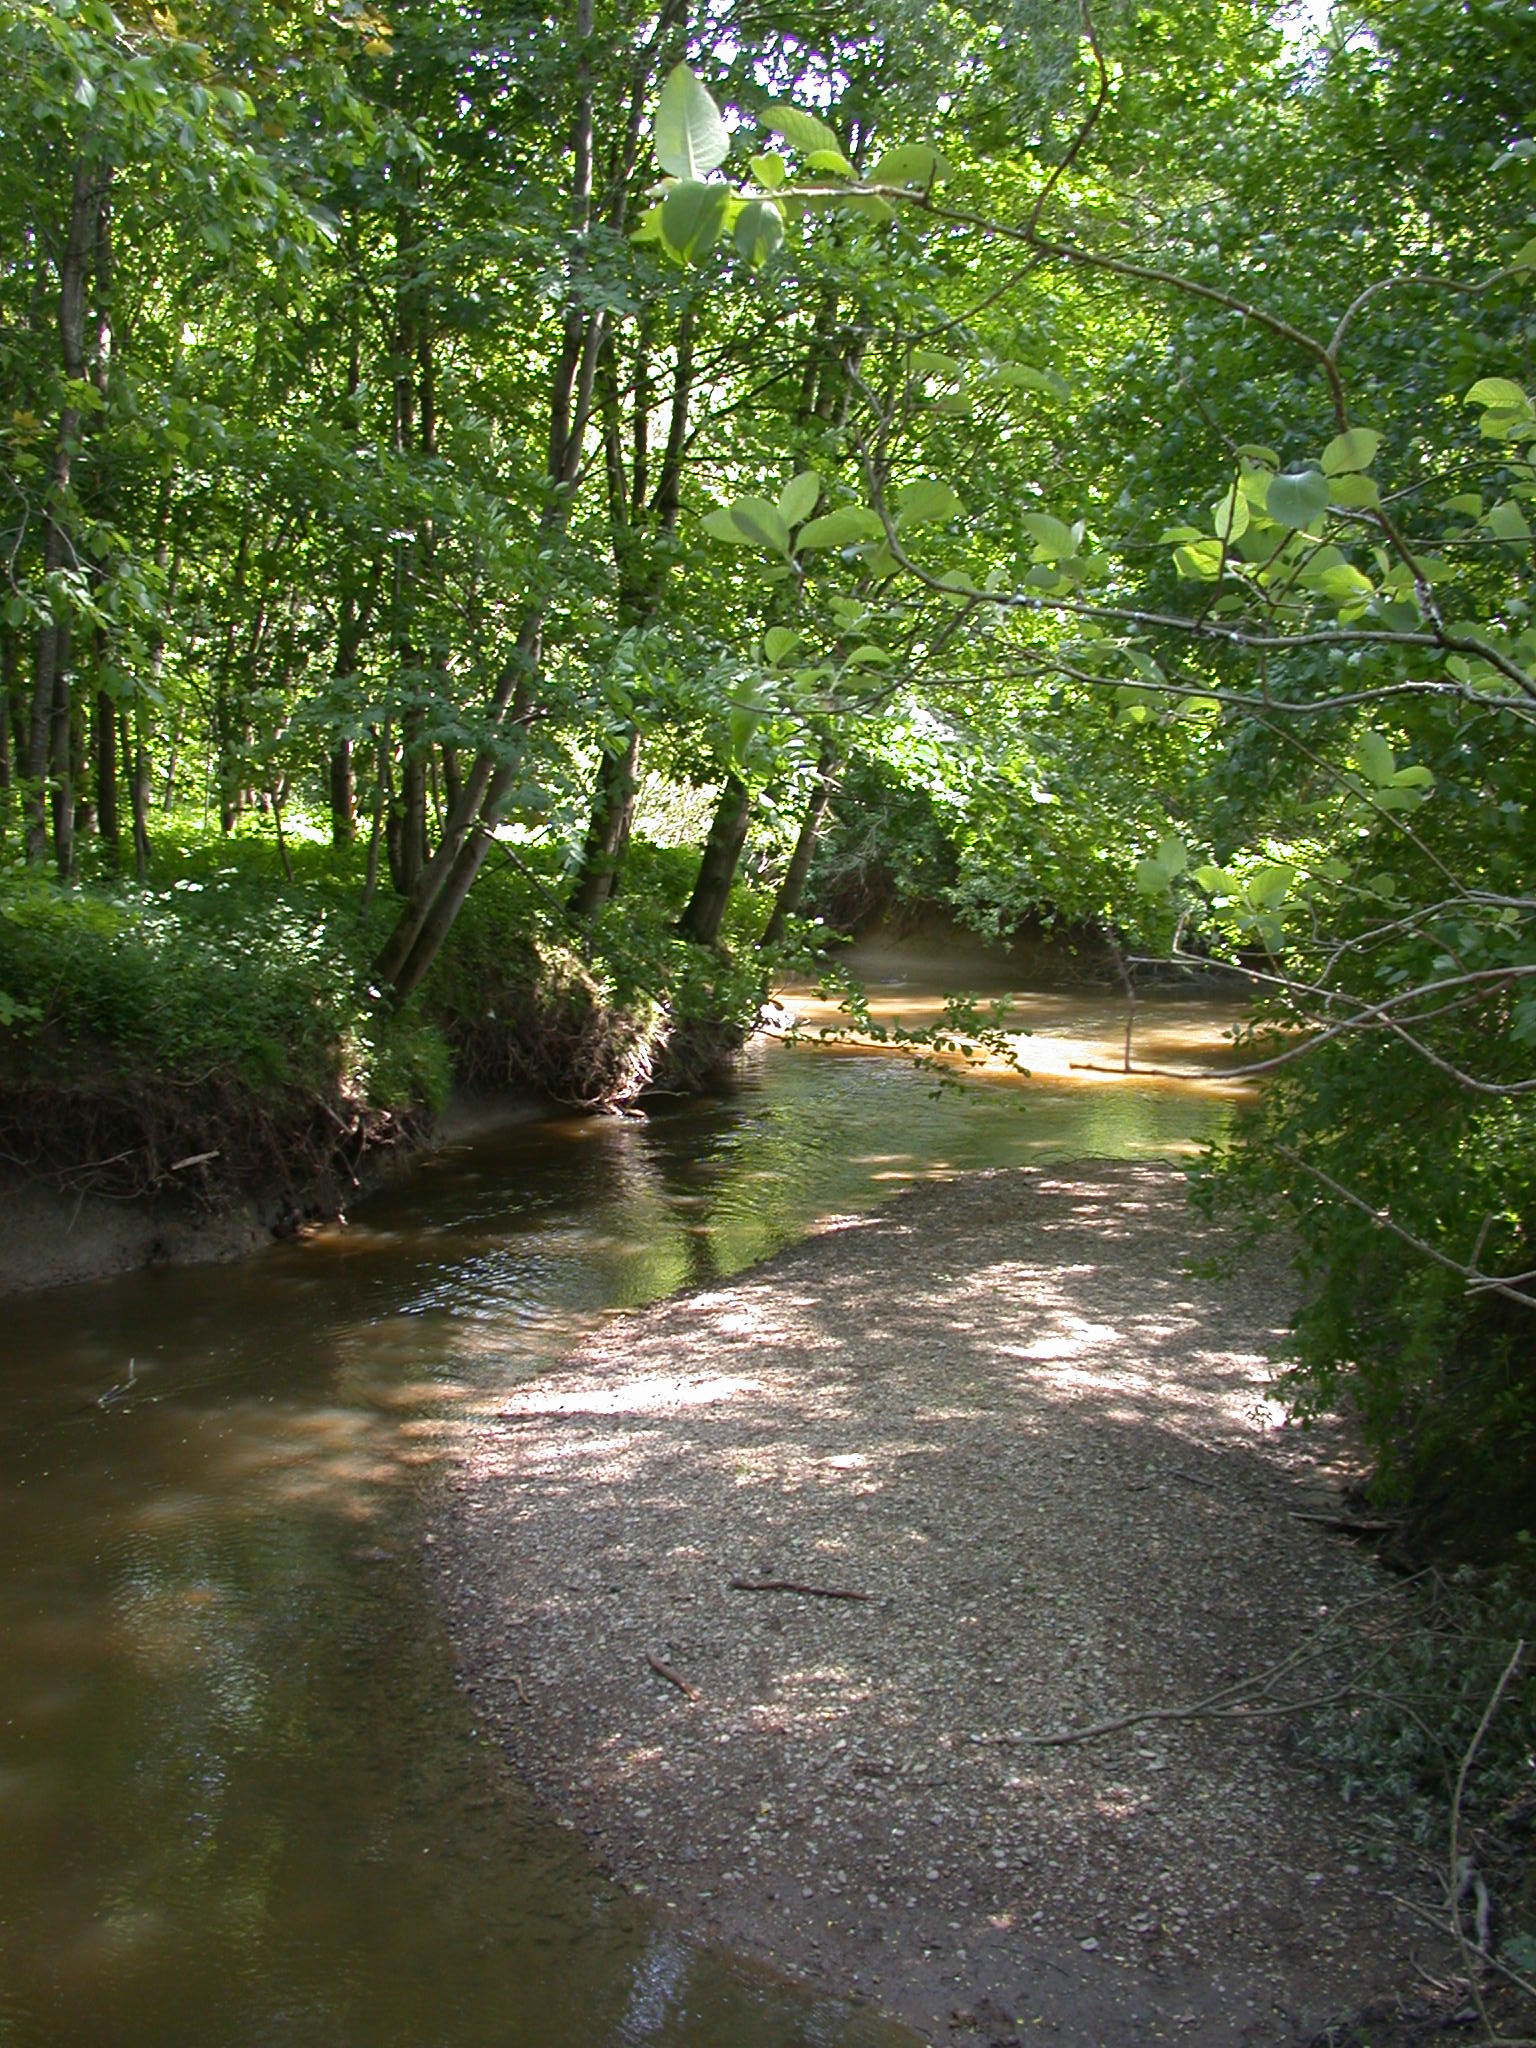 Kleiner Bach mit kleiner Sandbank und am Ufer stehen viele grüne Laubbäume